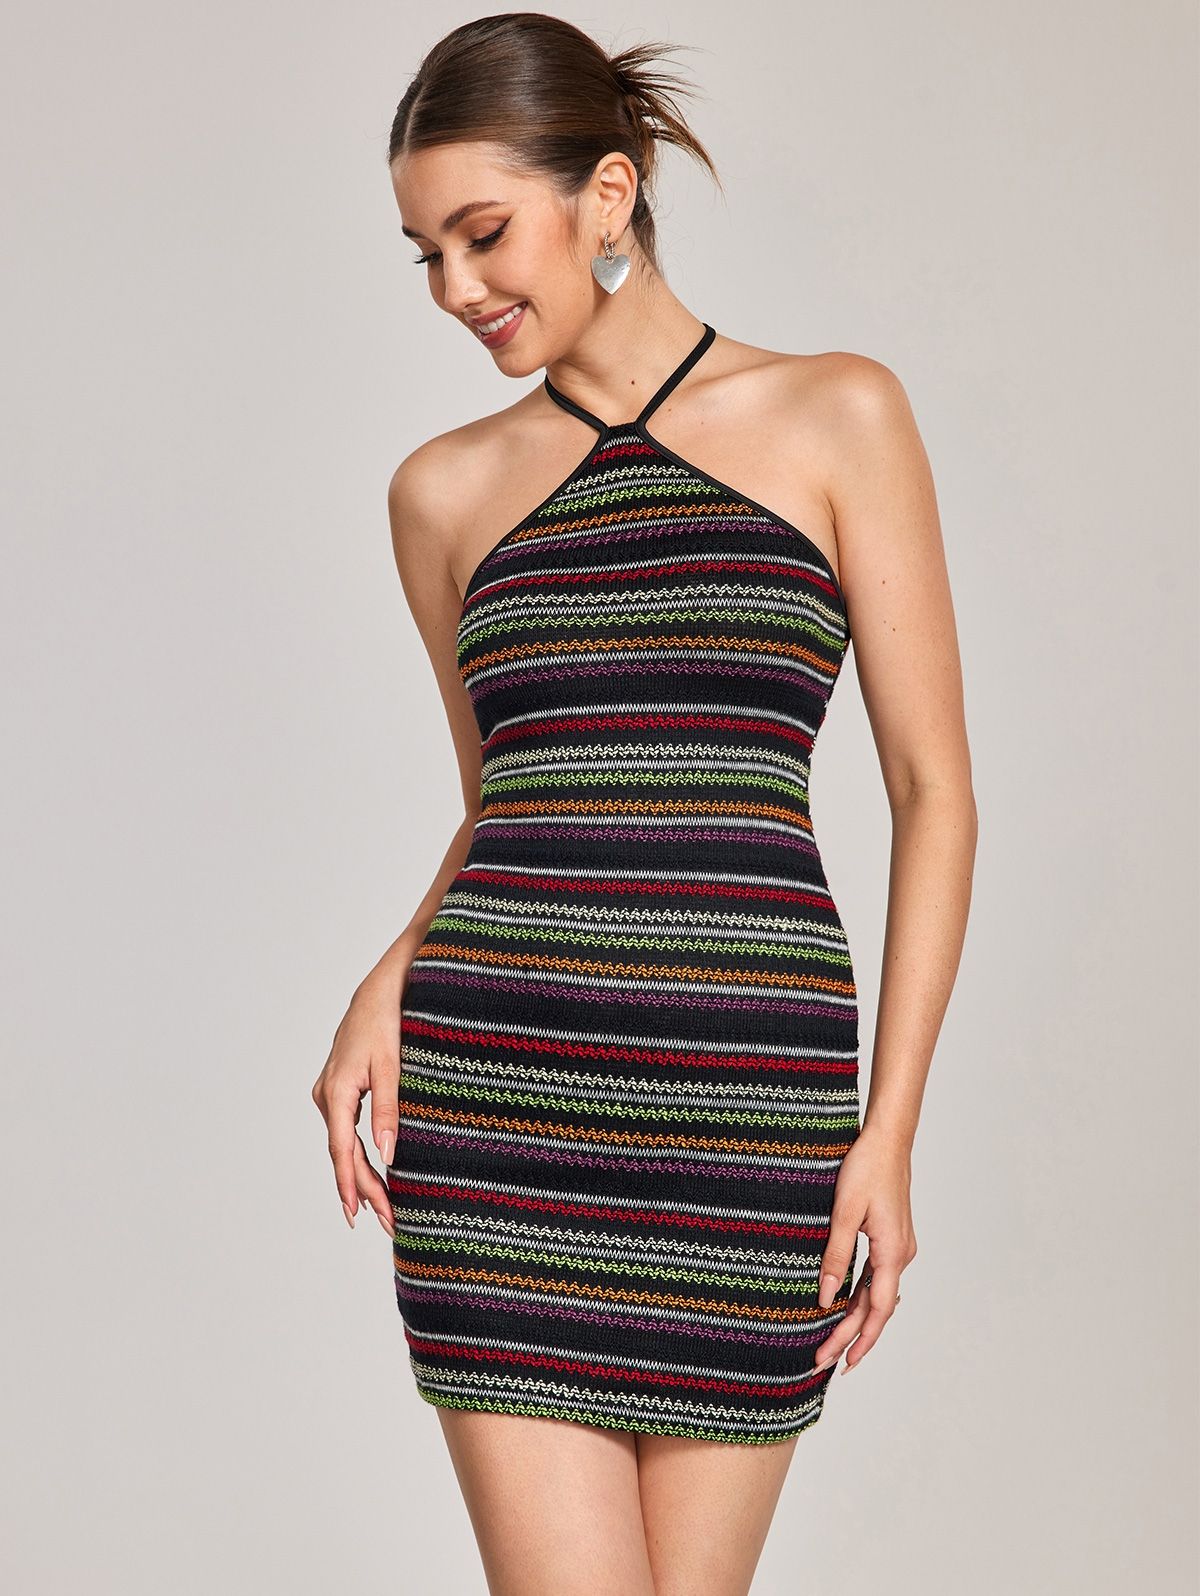 Zaful Halter Open Back Colorful Stripes Knit Dress